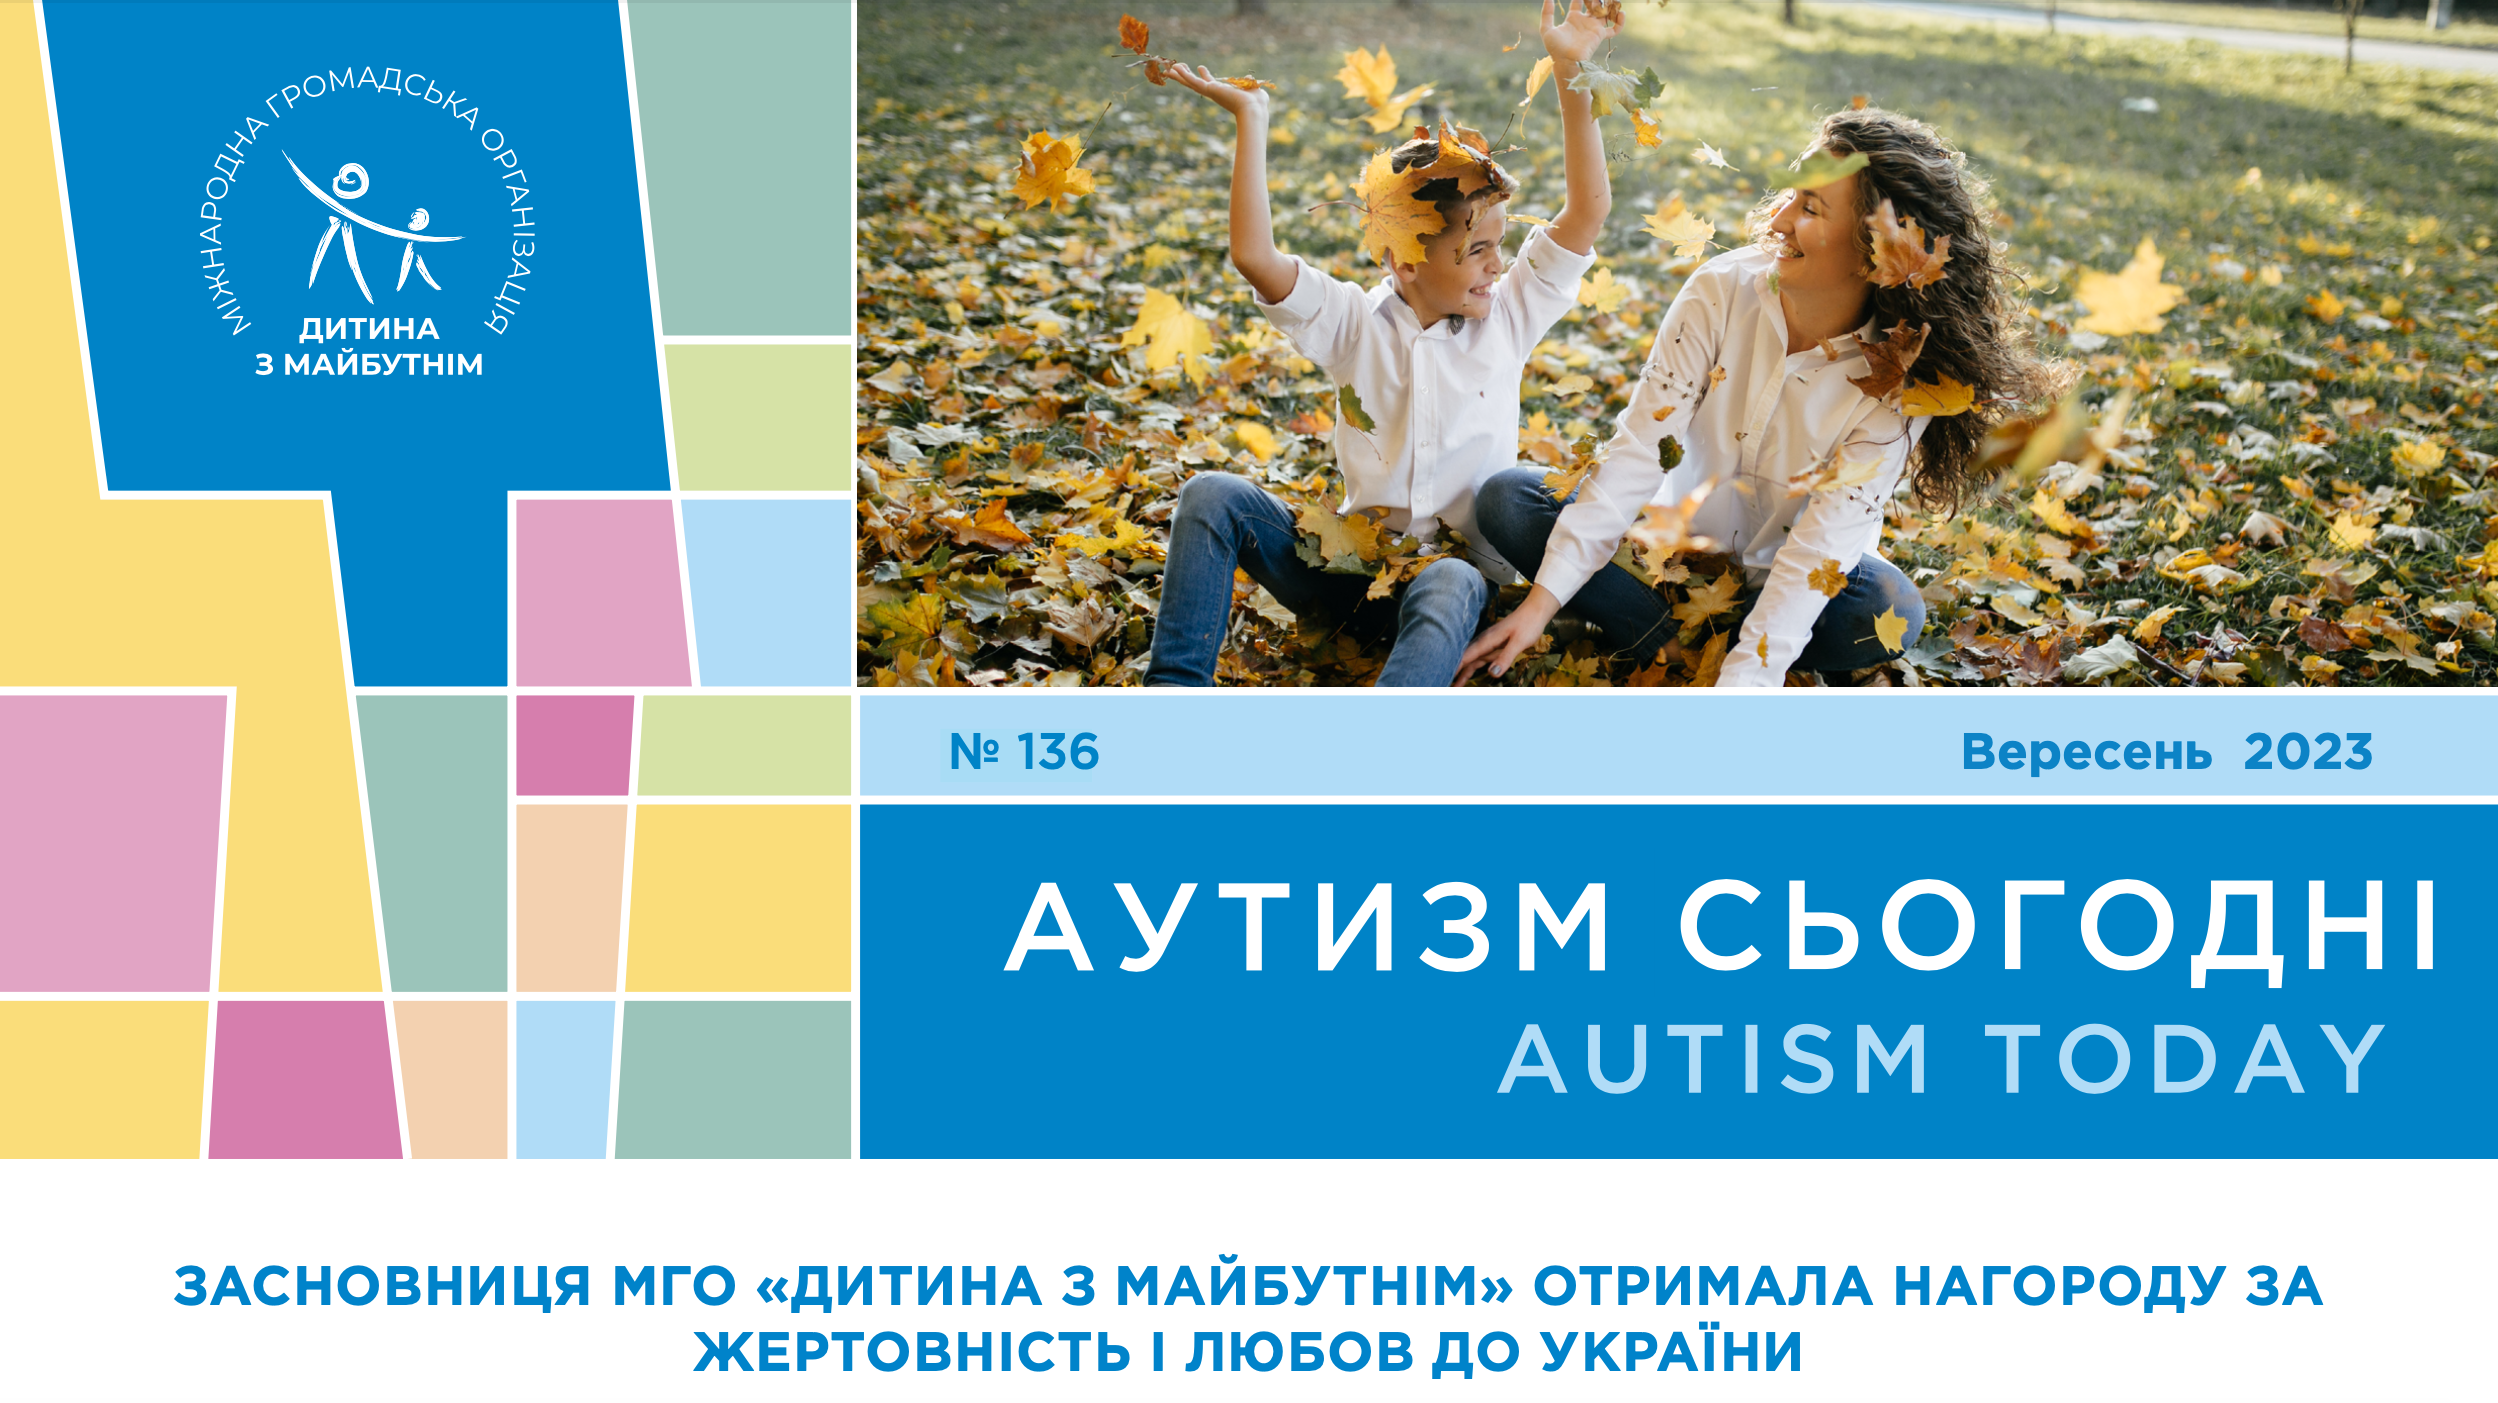 Награда за жертвенность и любовь к Украине, уникальное приложение для детей с РАС и исследования о гендерном разнообразии лиц с ментальными нарушениями — на страницах «Аутизм сегодня» за сентябрь 2023 года